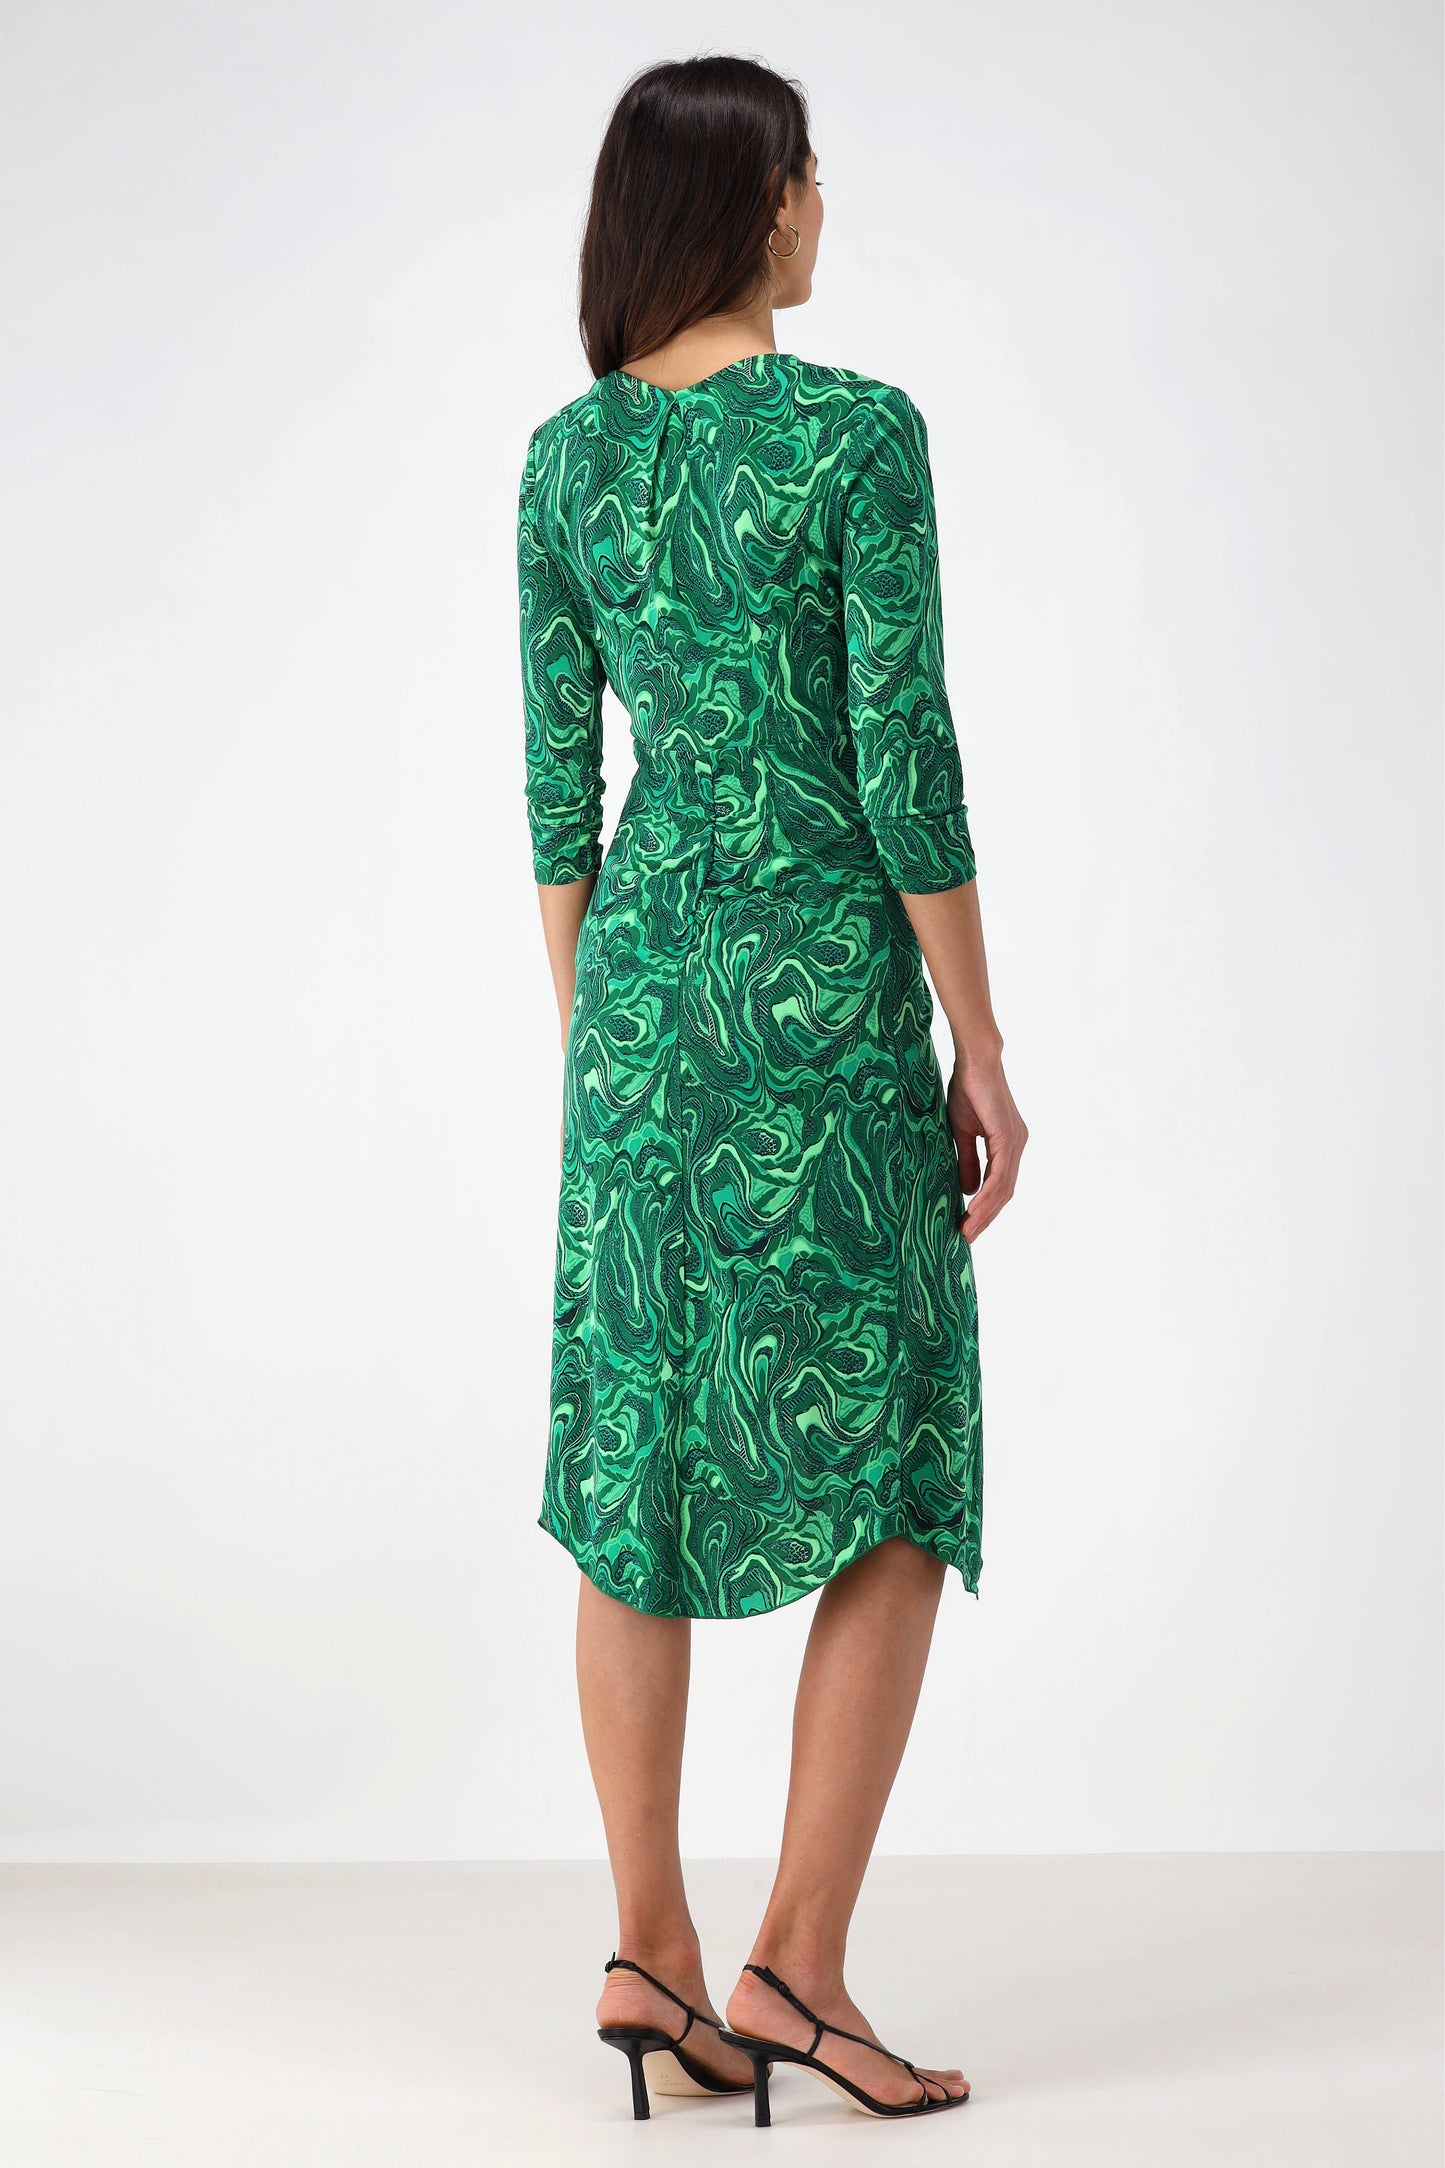 Kleid Lilac in Marble GreenDiane von Furstenberg - Anita Hass